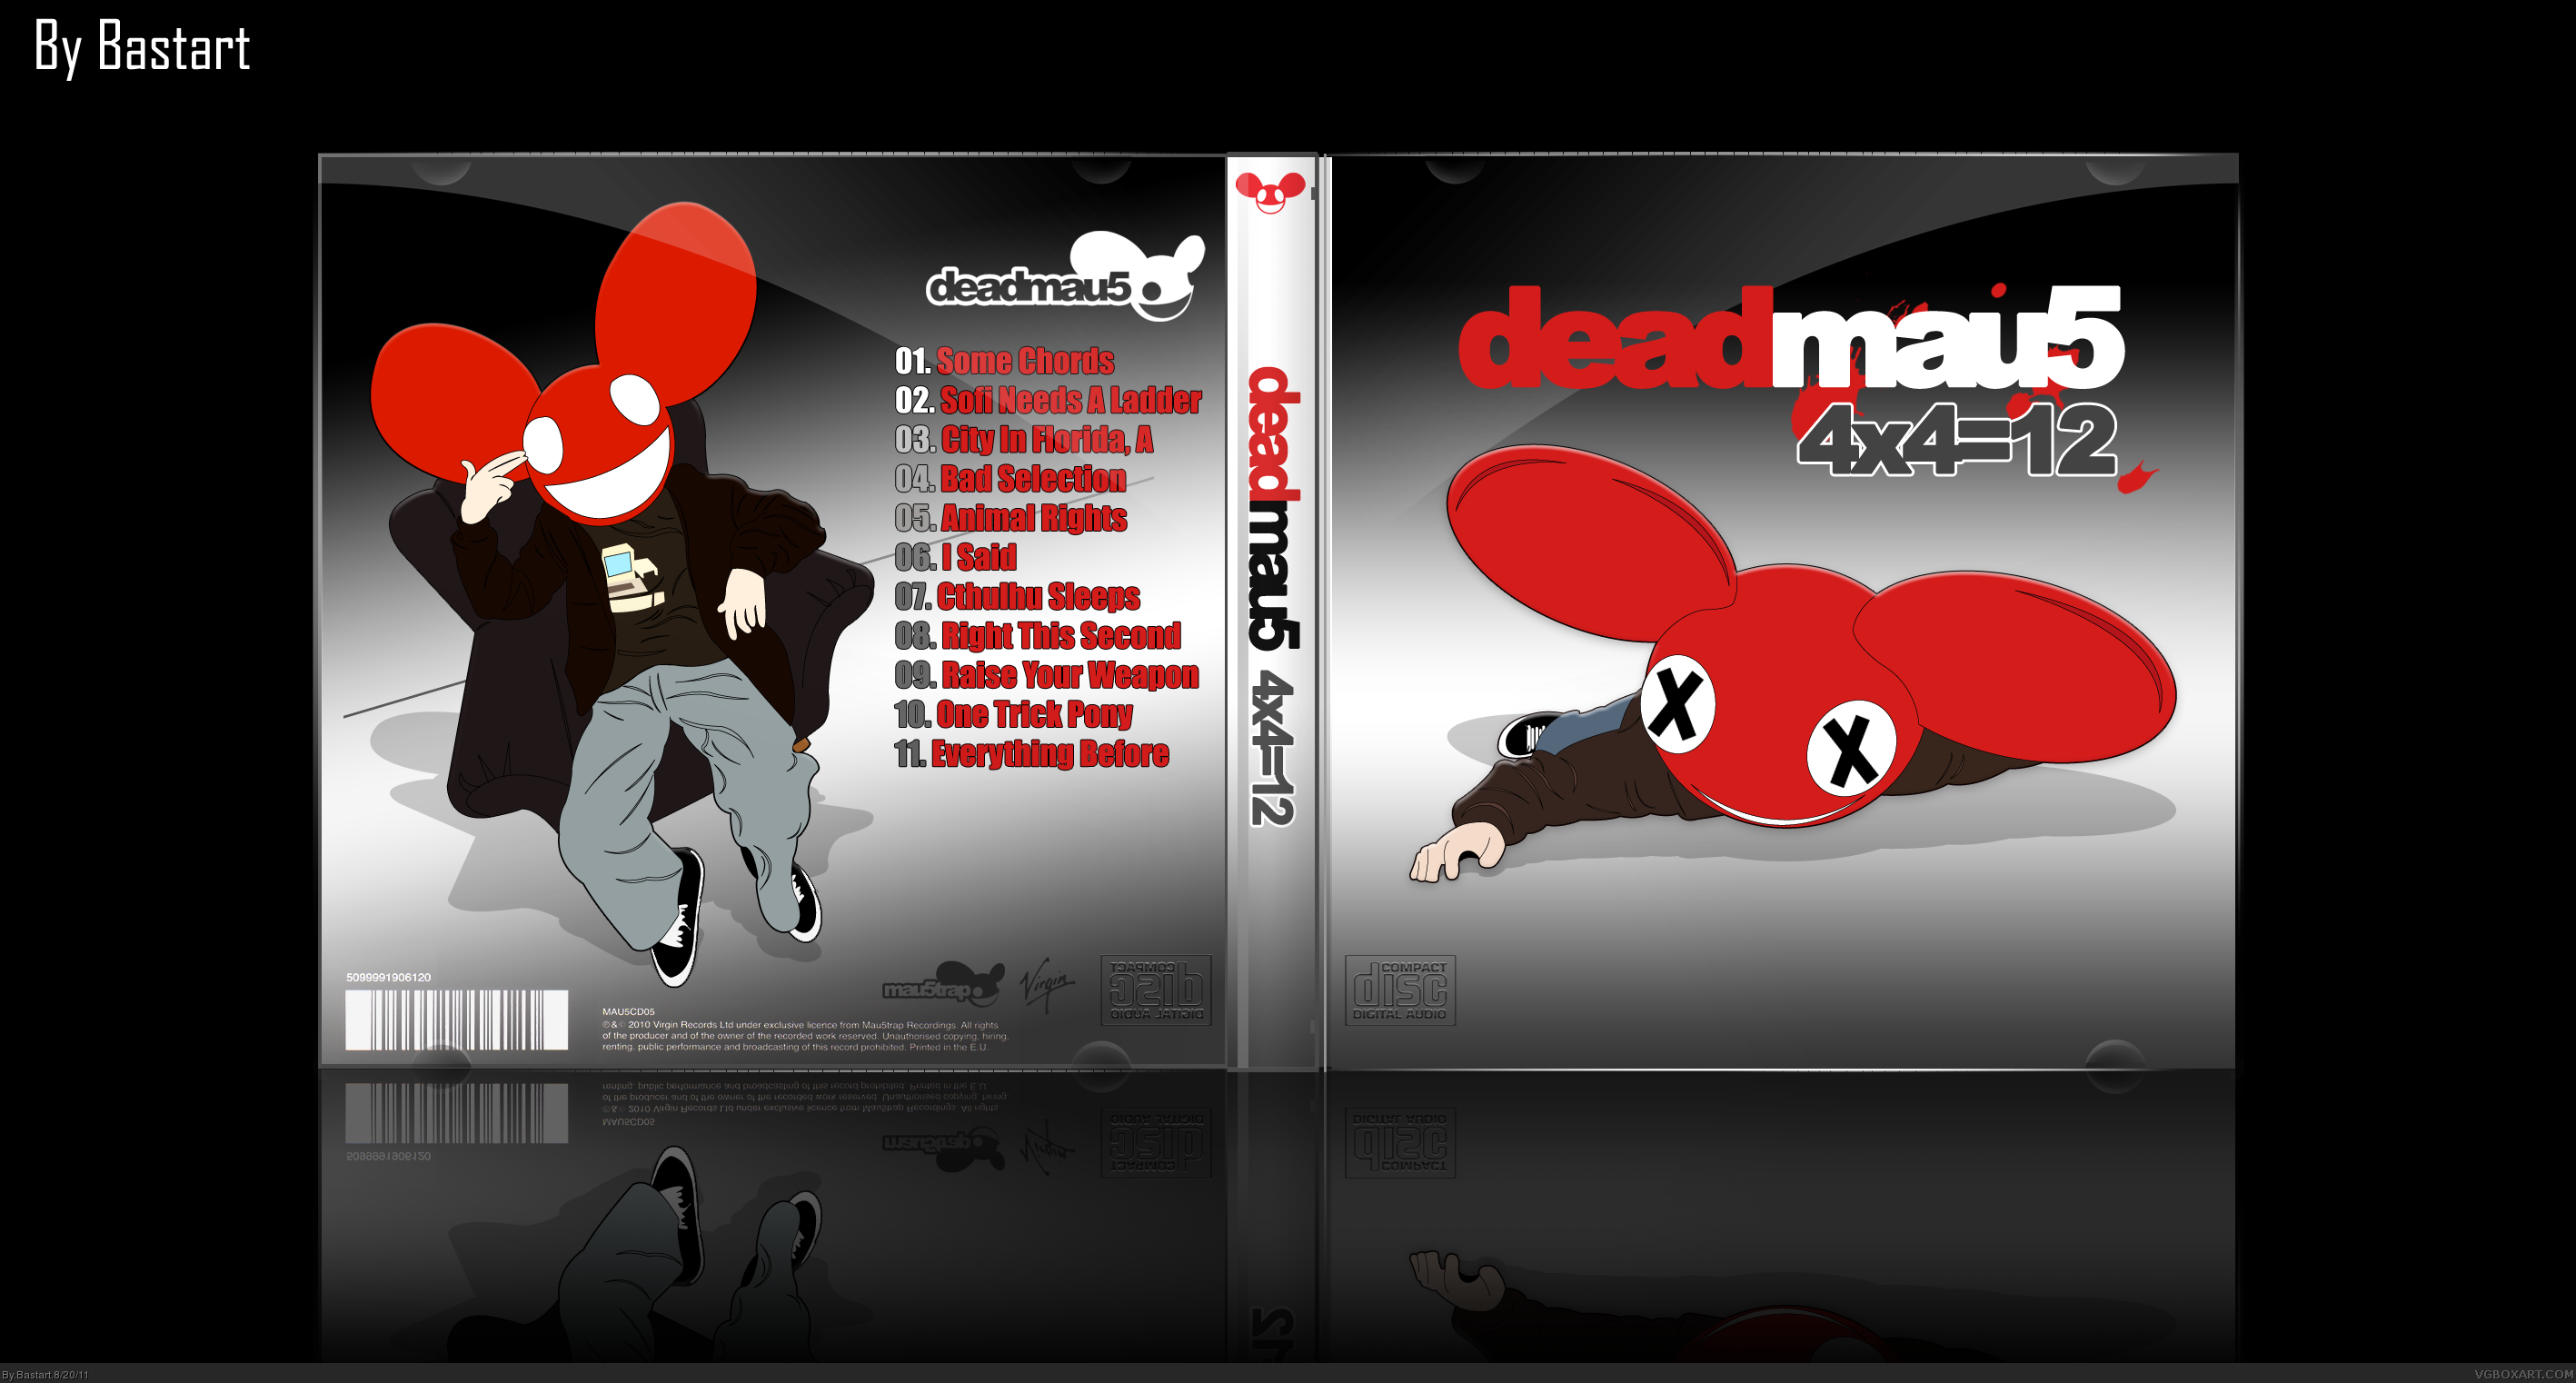 deadmau5 full album 4x4 12